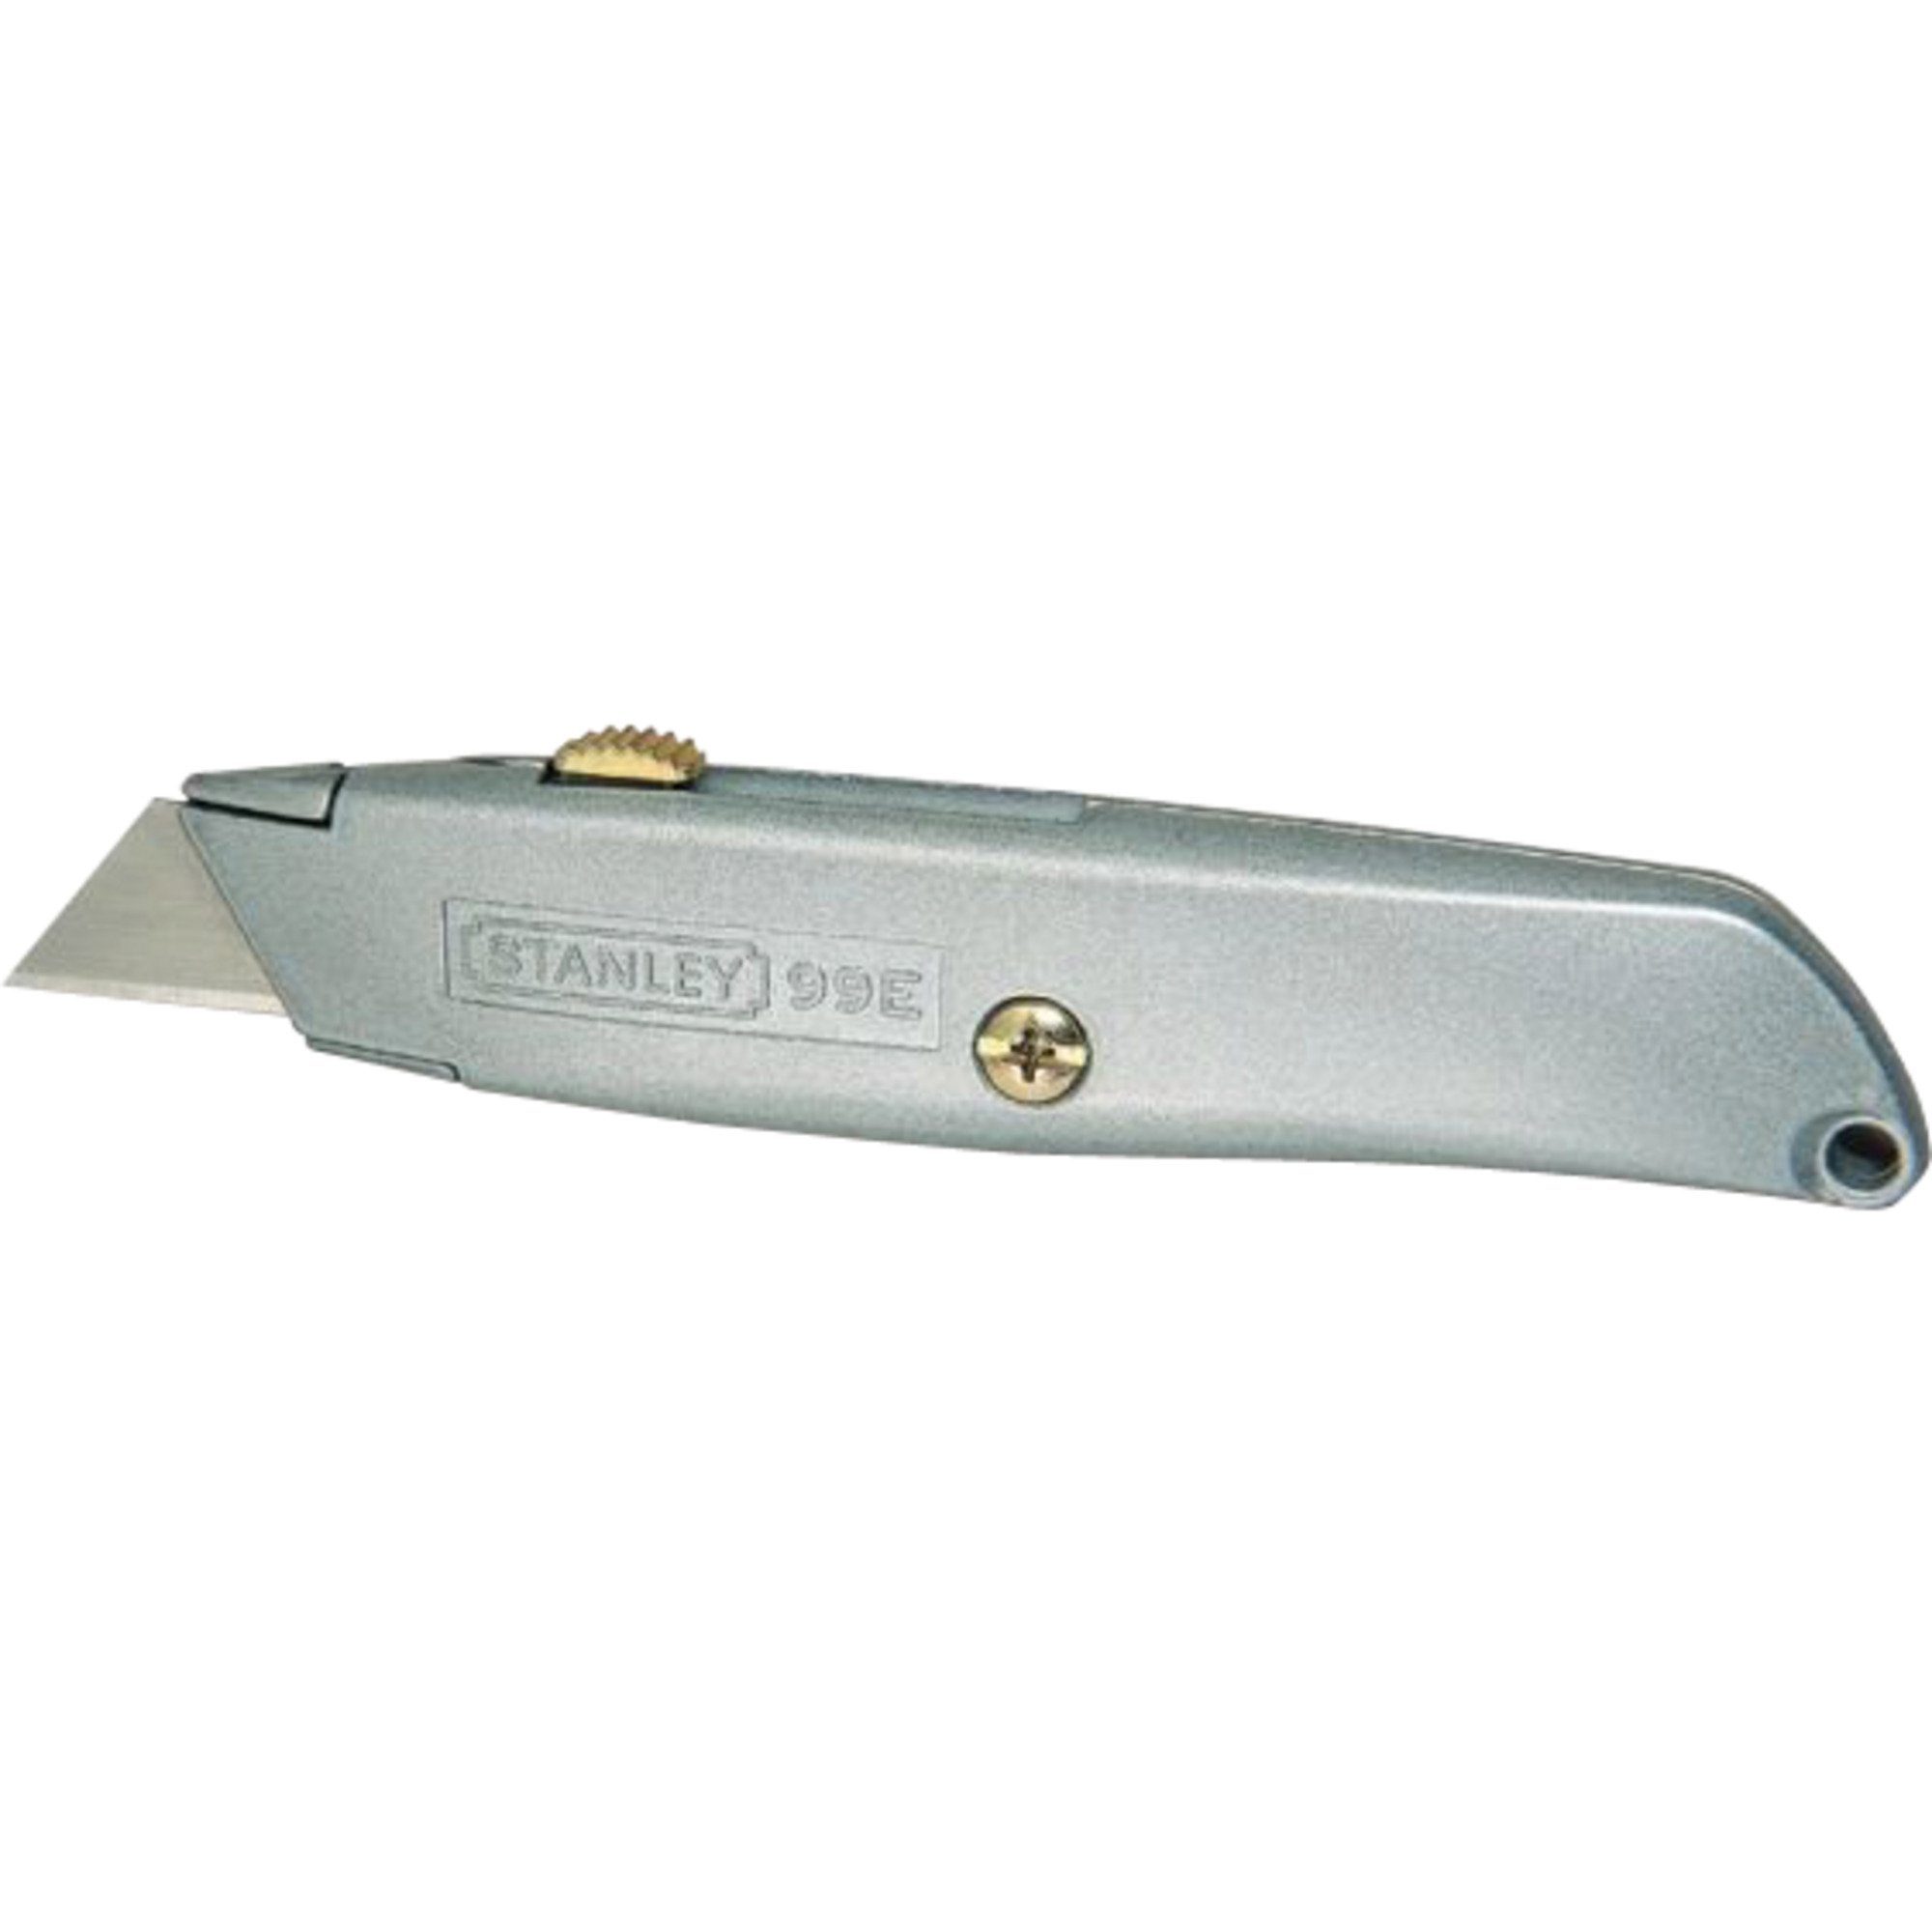 Multitool einziehbare STANLEY Messer Klinge 99E, Stanley